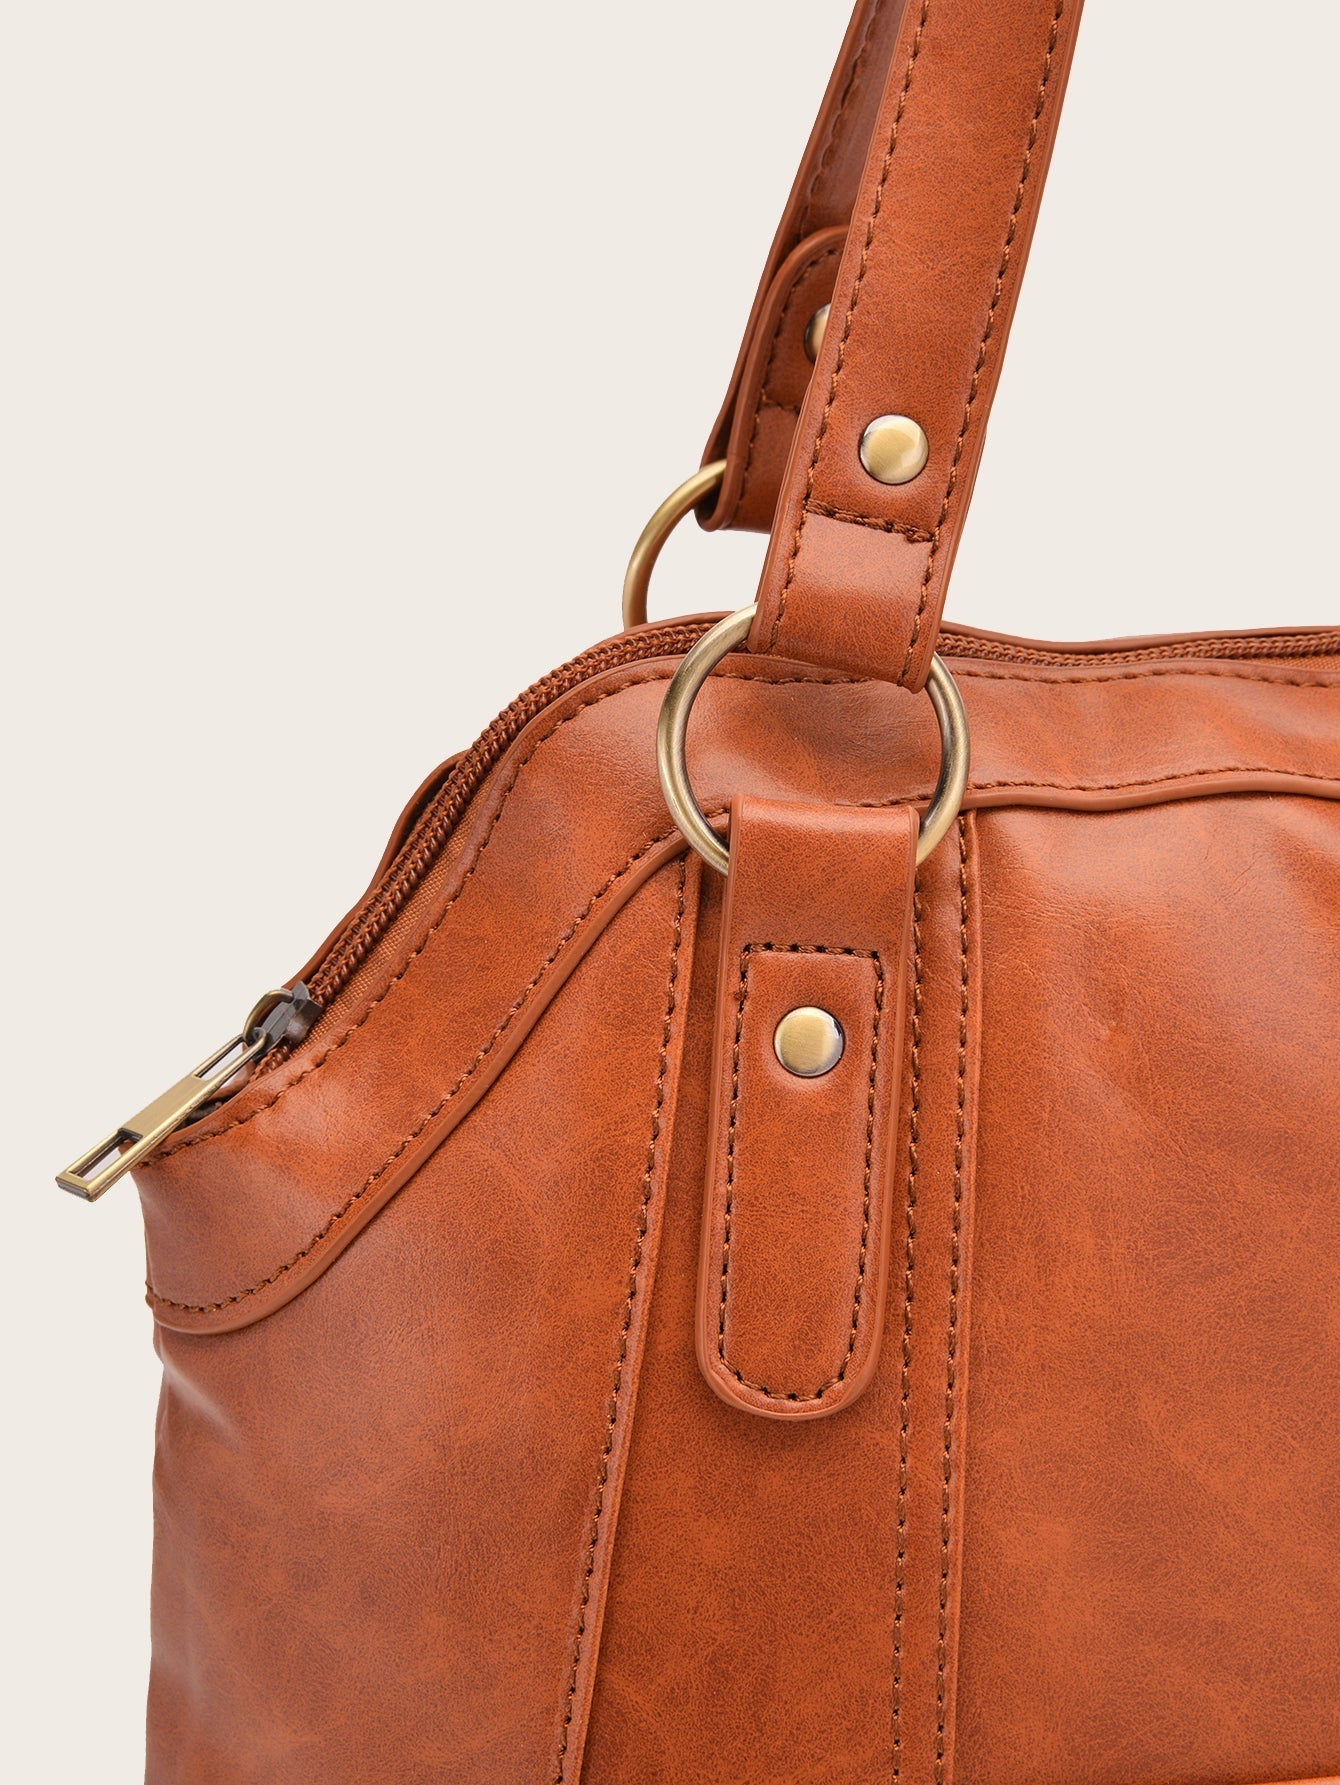 Women Large Capacity Bag Handle bag Sai Feel